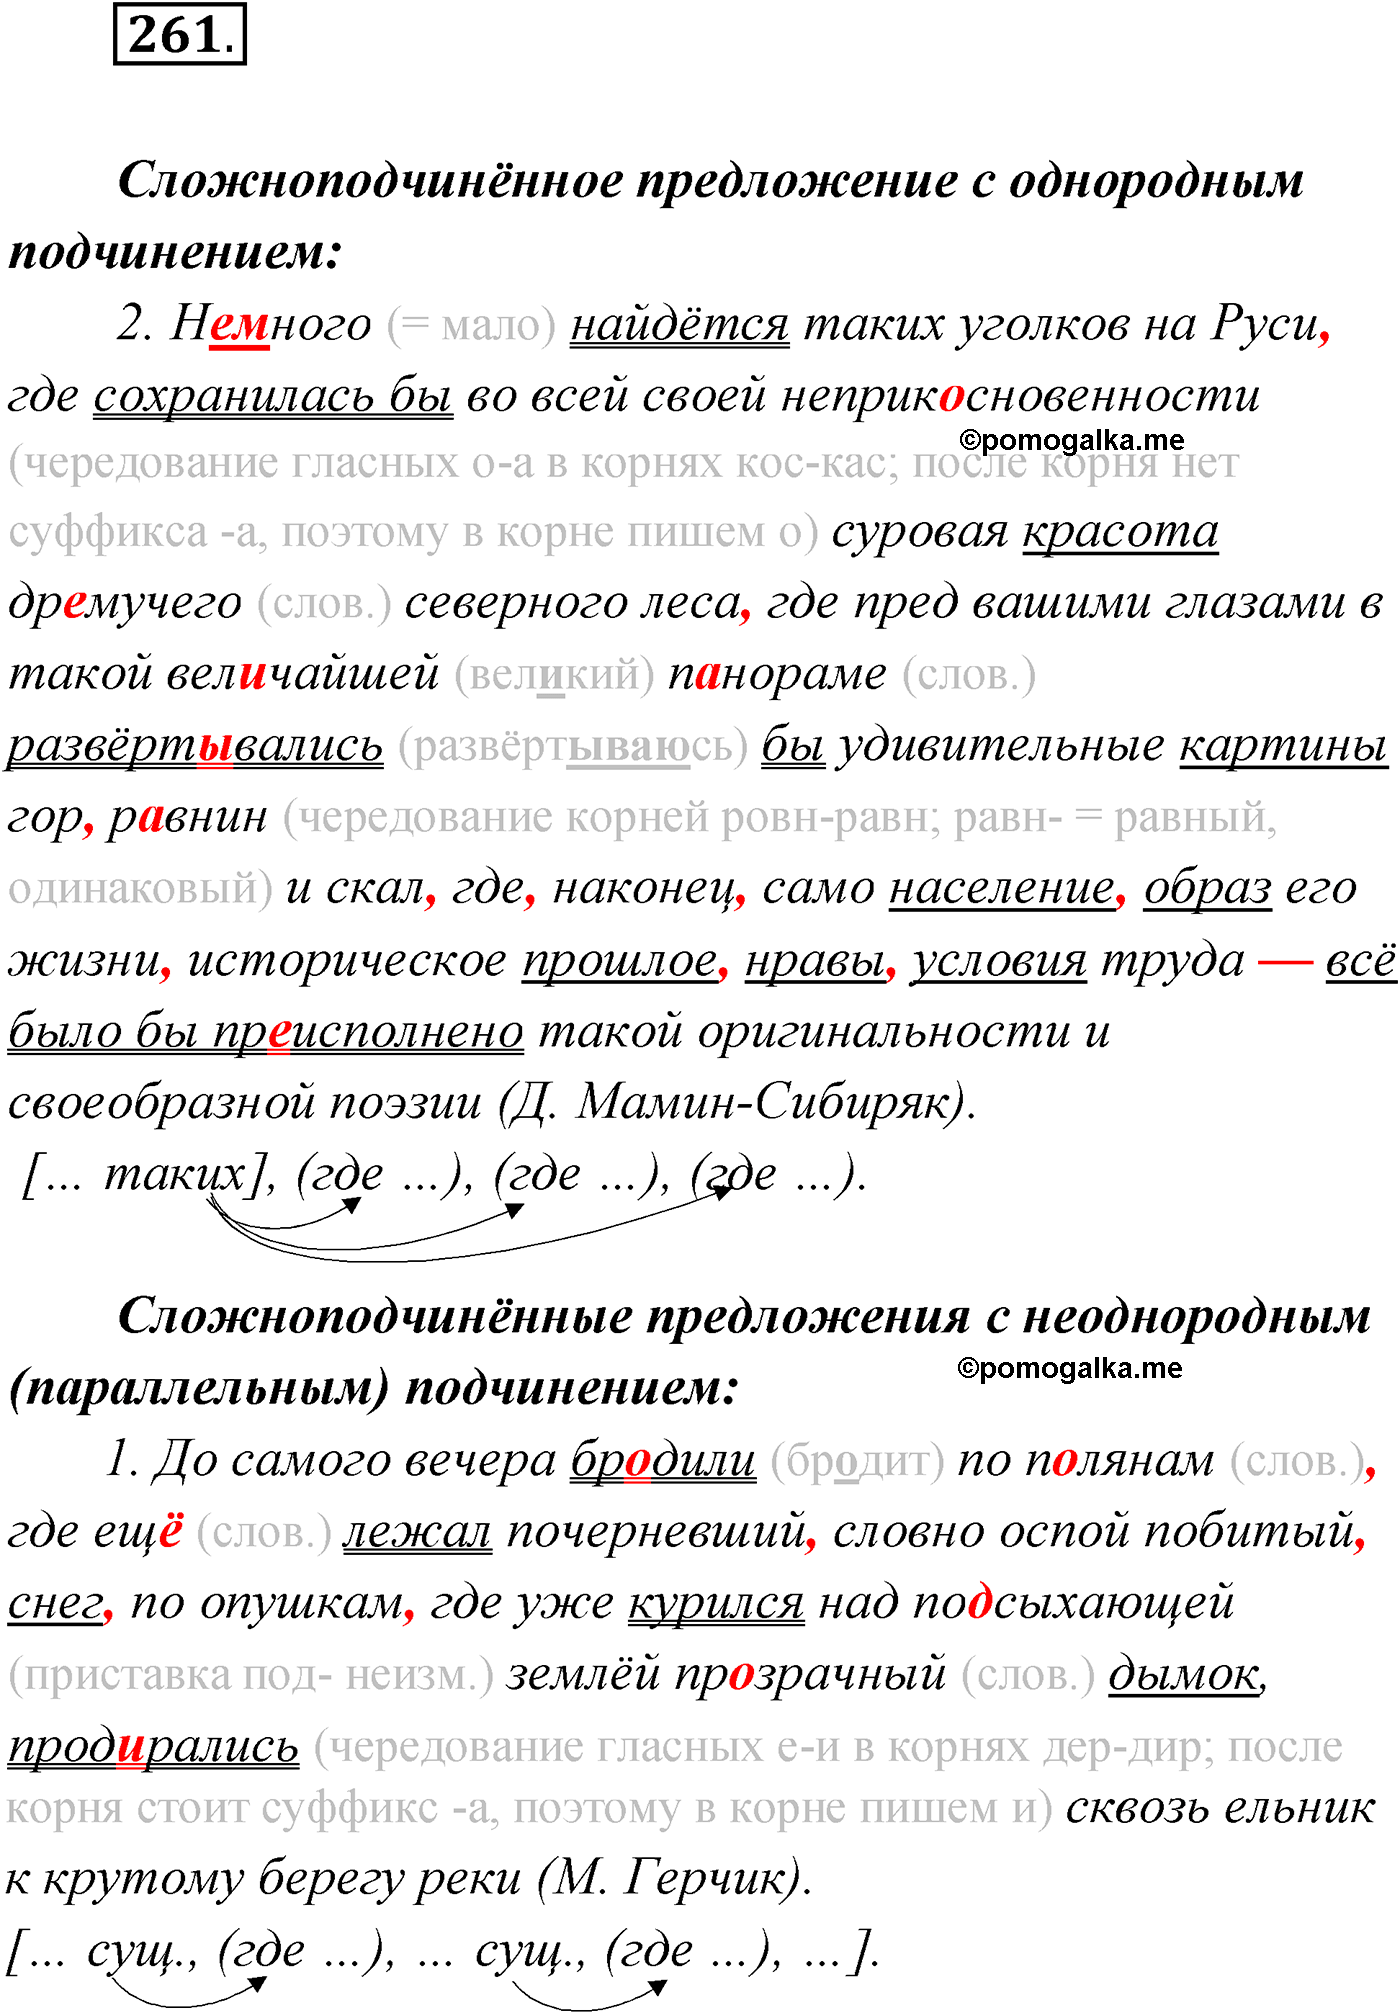 упражнение №261 русский язык 9 класс Мурина 2019 год